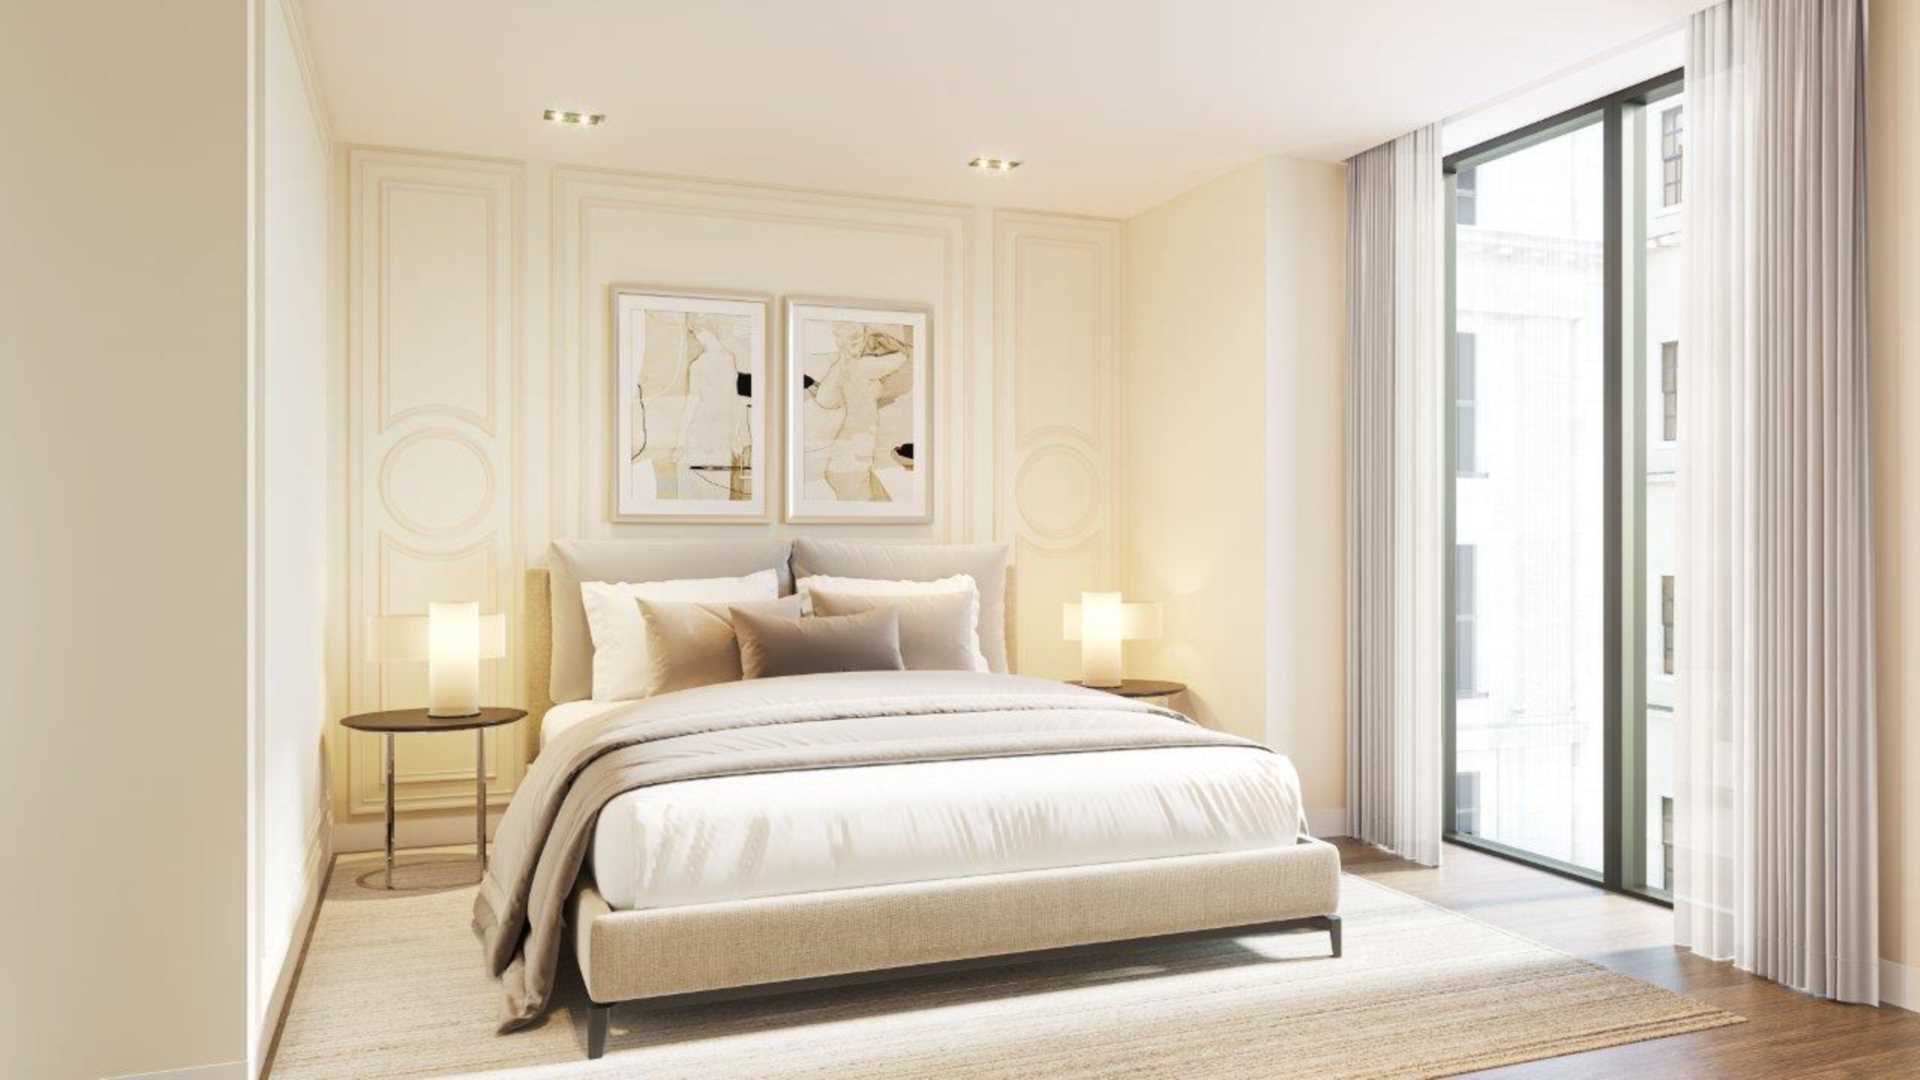 London W1W 5QJ 2 bed flat sales property internal/external image-3